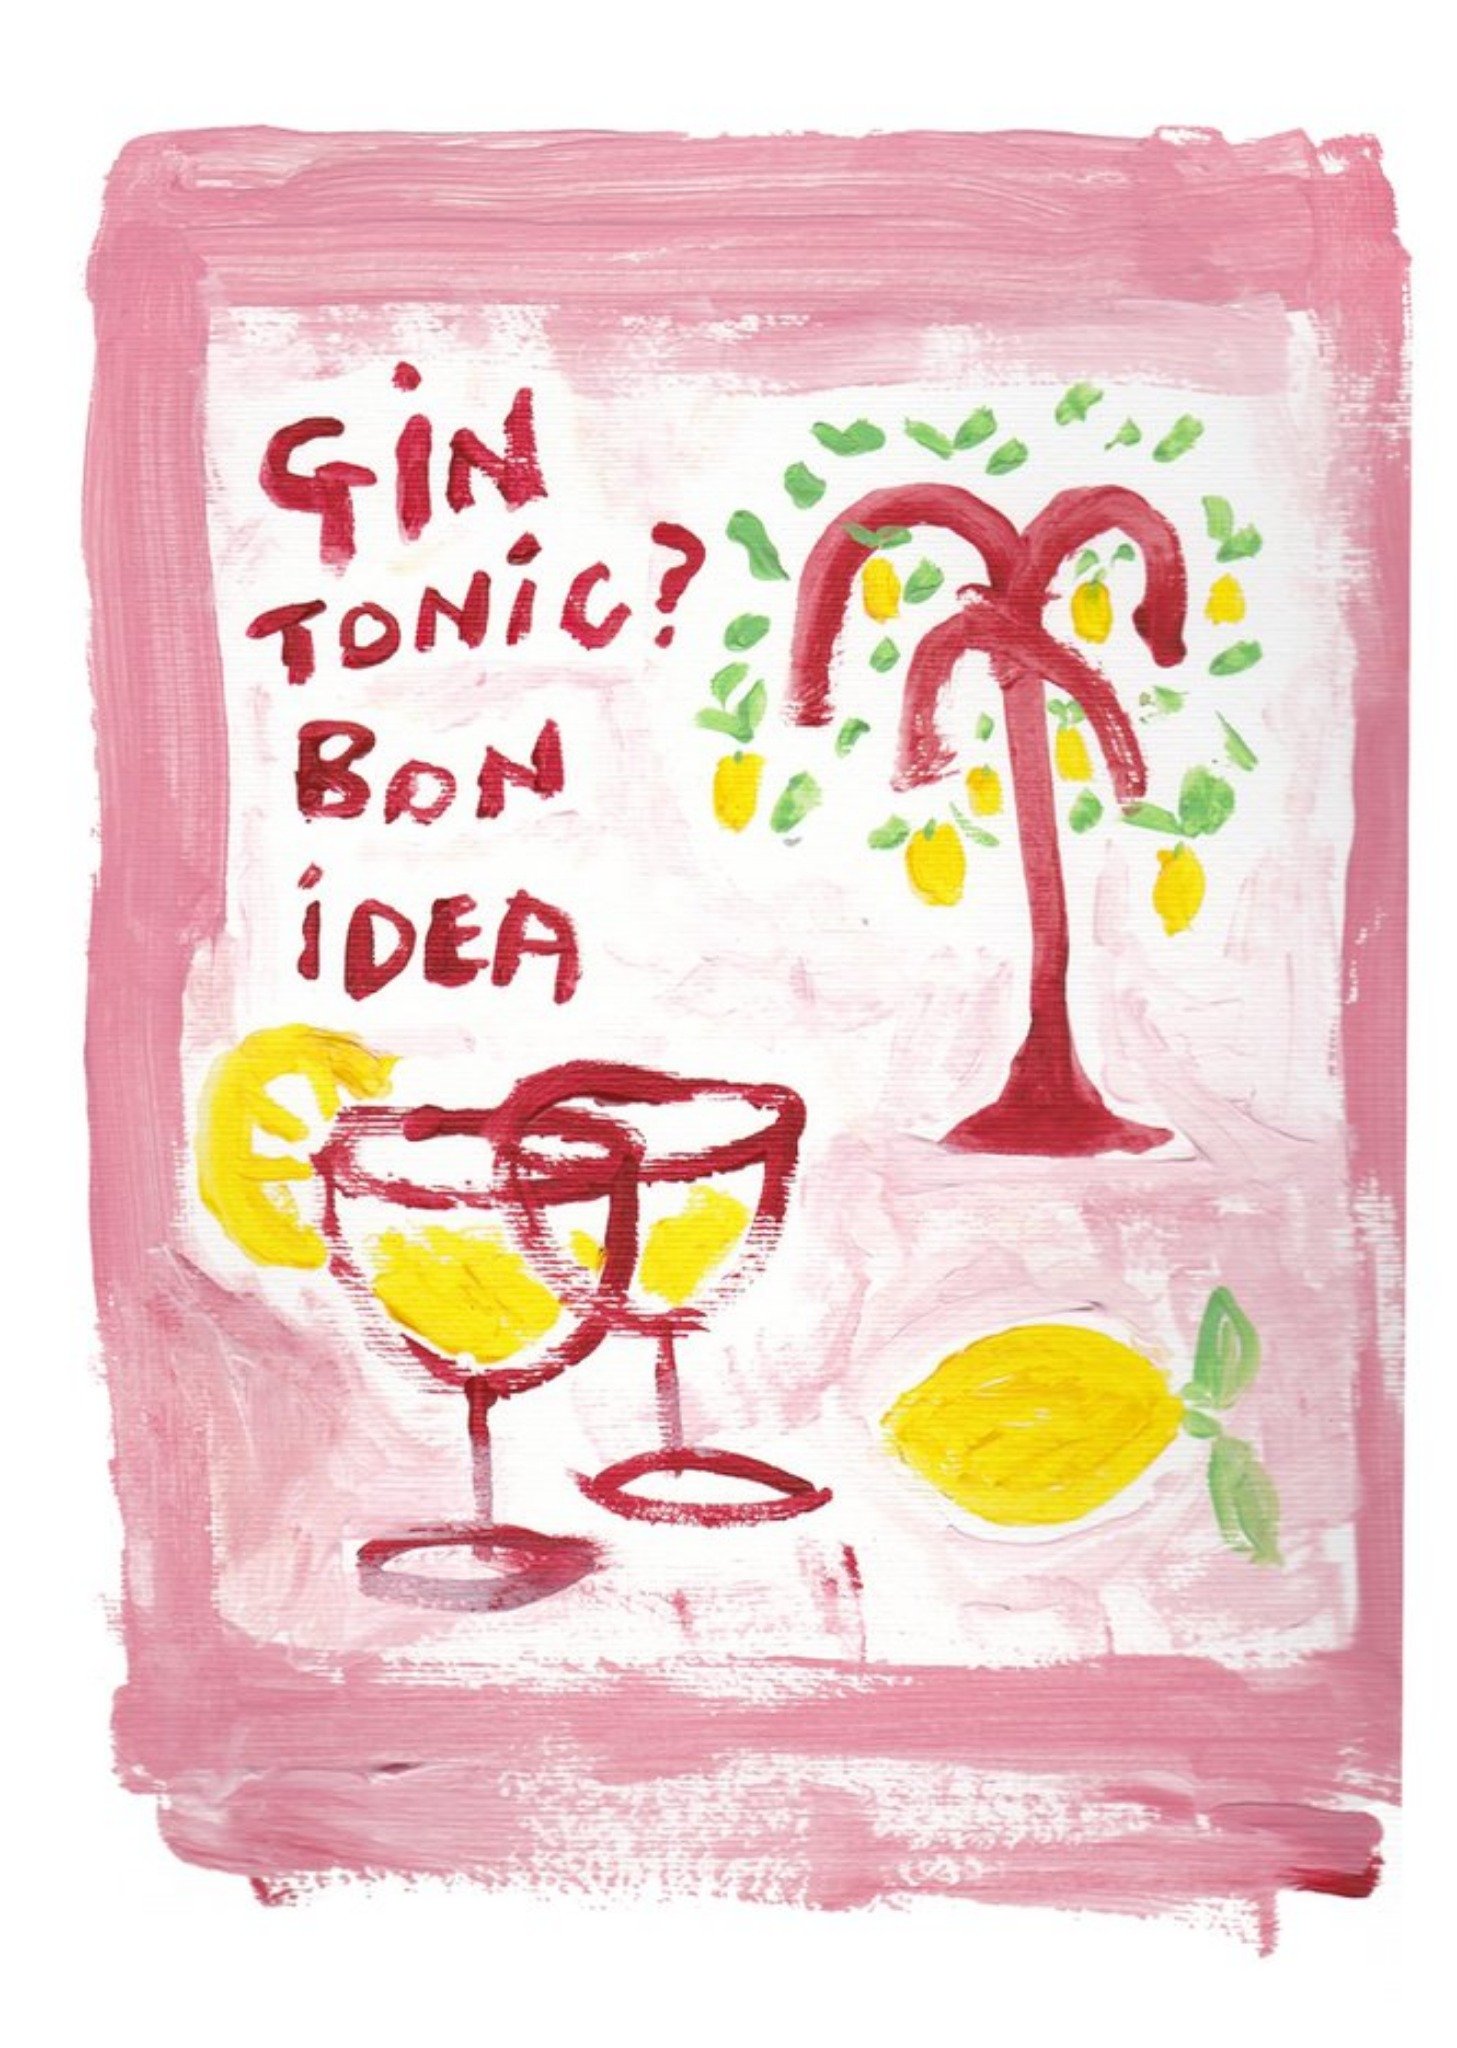 Moonpig Gin Tonic? Bon Idea Card Ecard